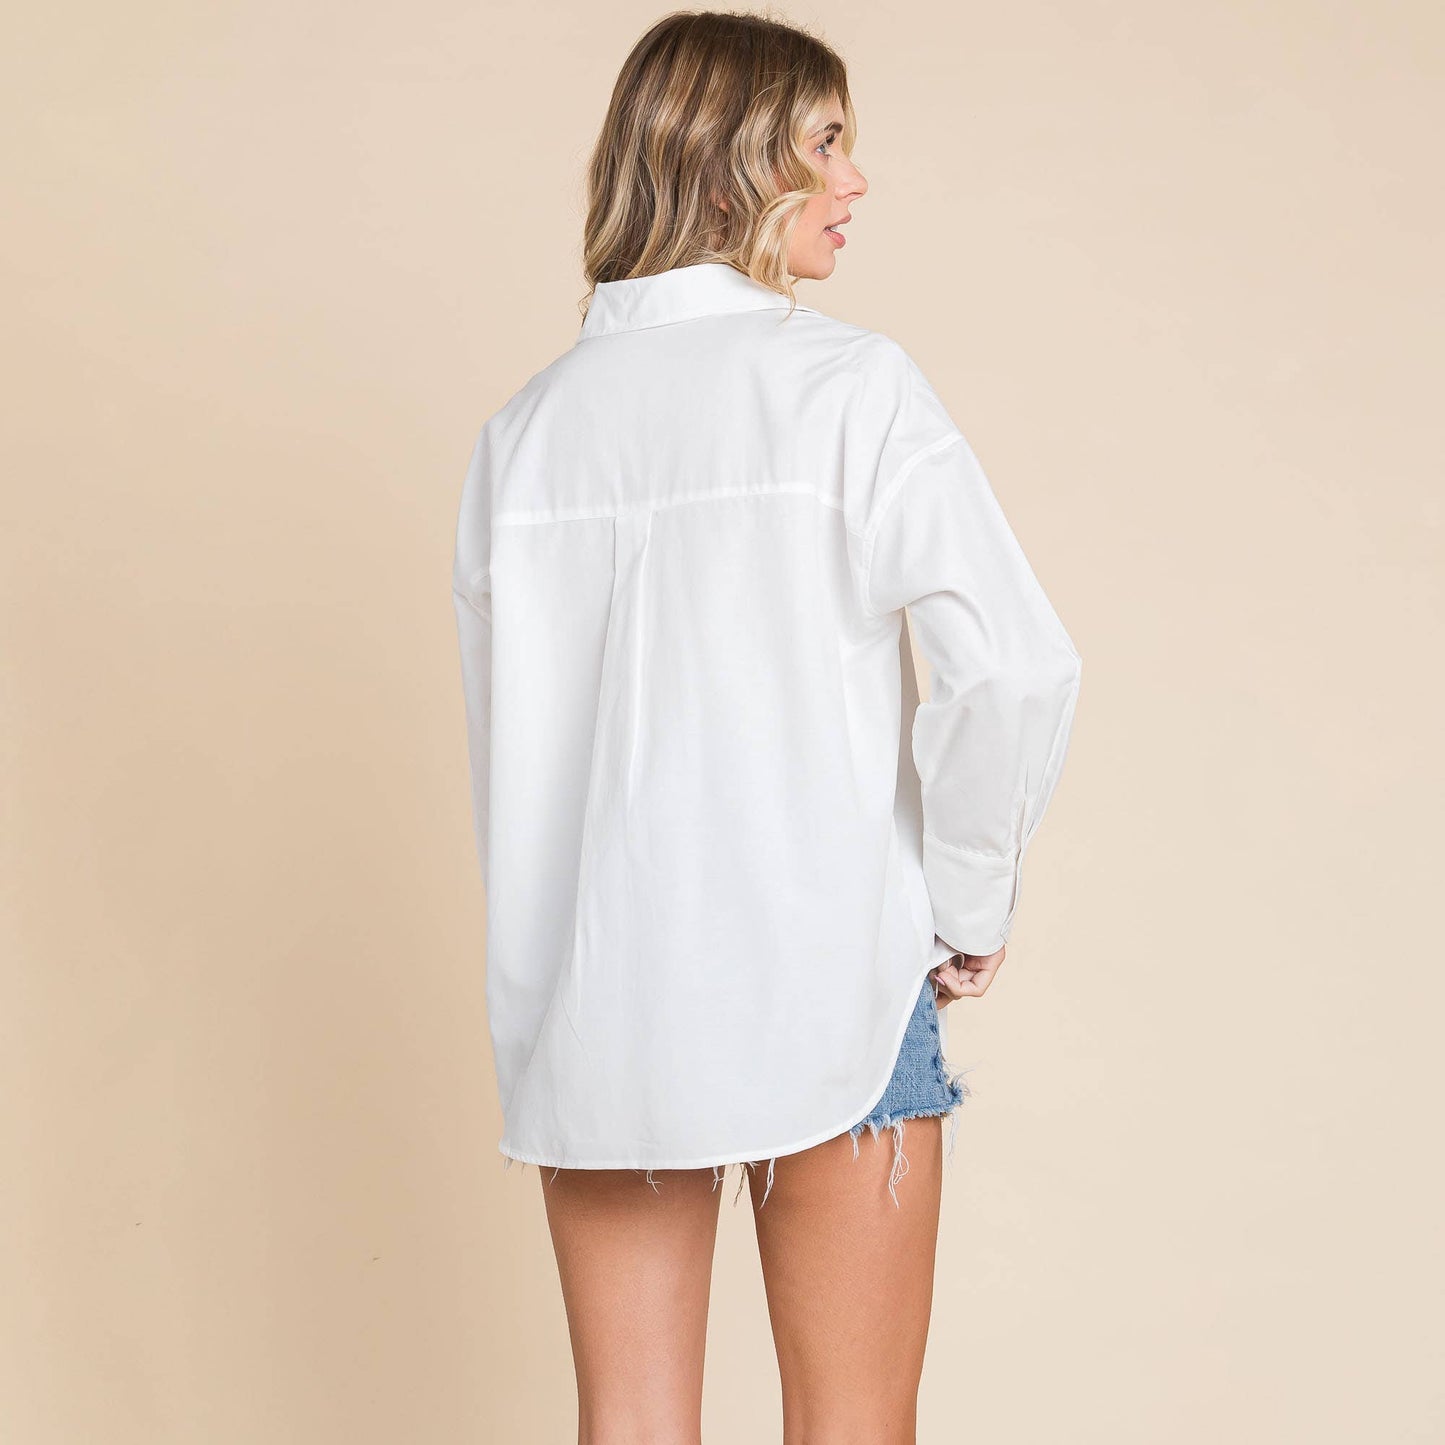 RP Oversized V neck Collared Long Sleeve Oxford Shirt: White